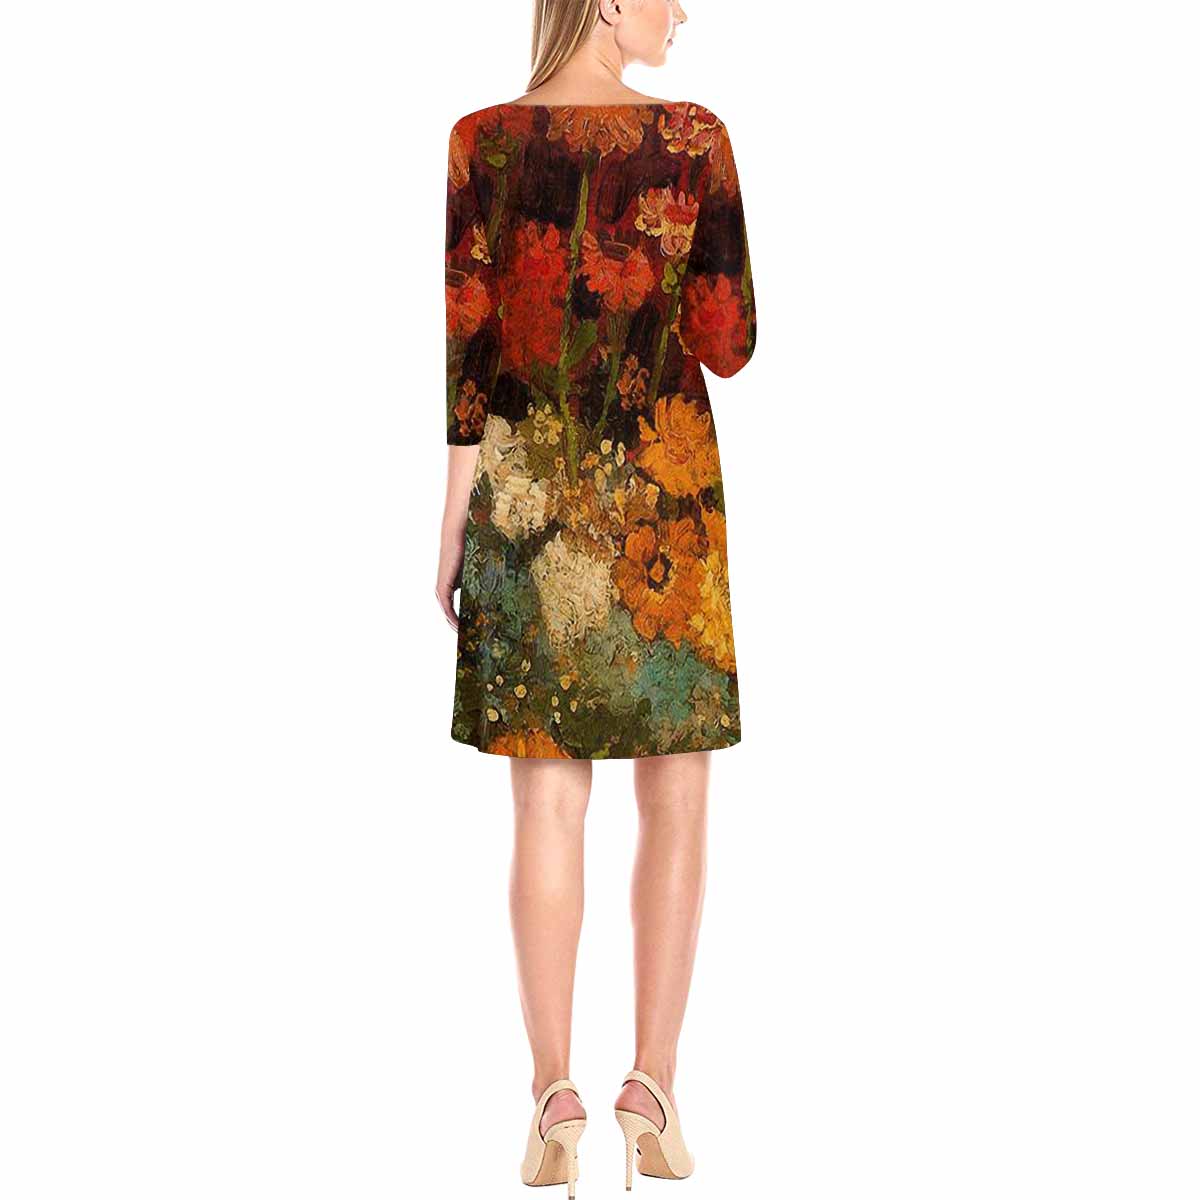 Vintage floral loose dress, model D29532 Design 31